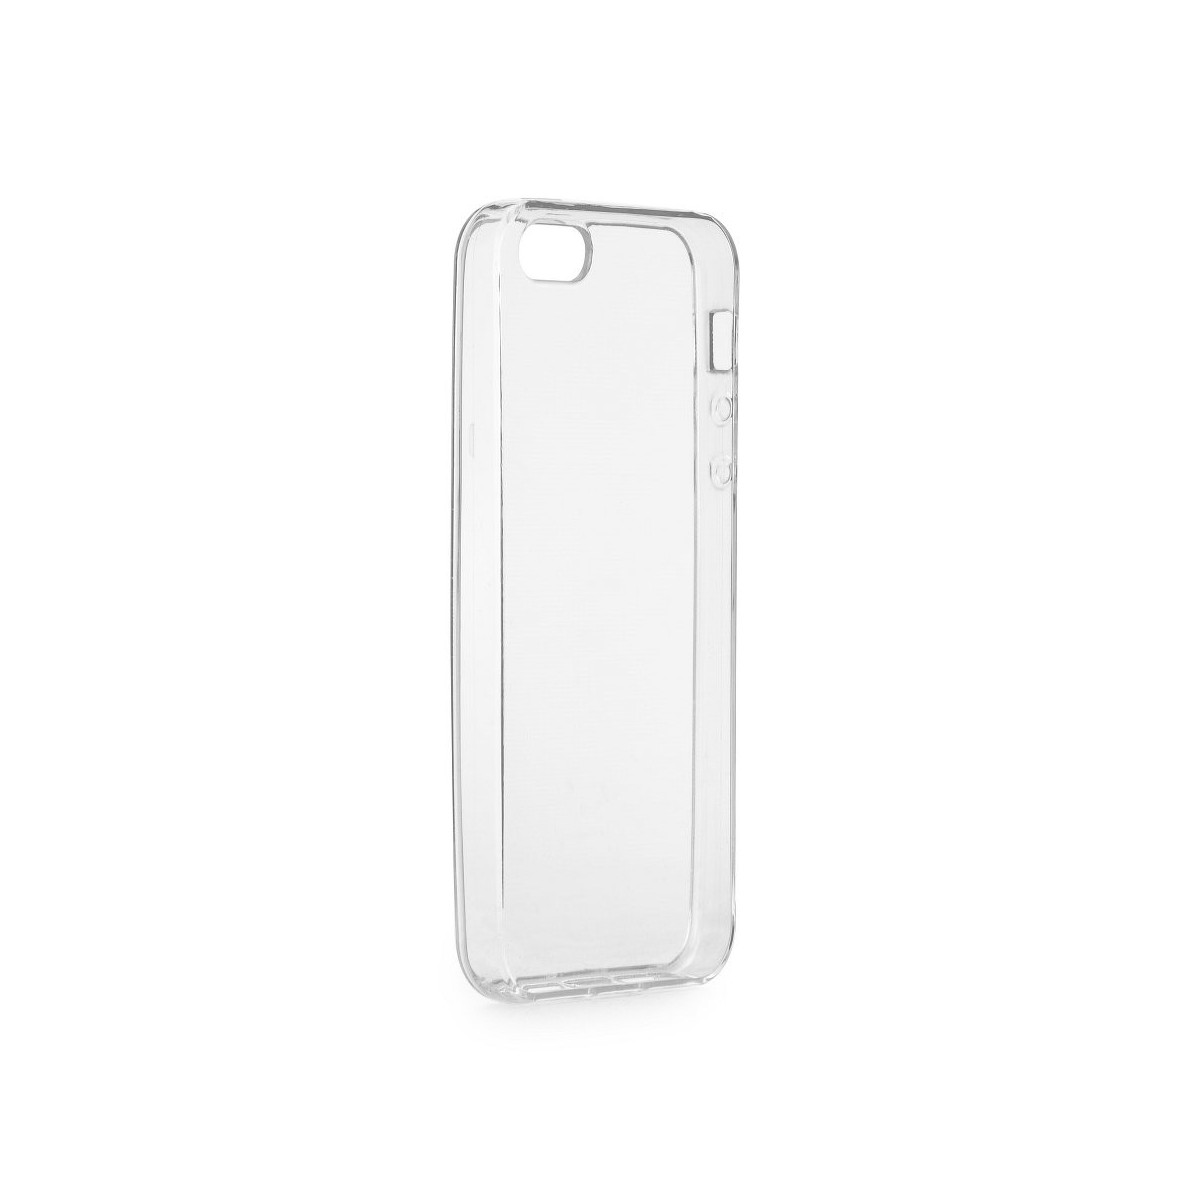 Coque iPhone SE / 5S / 5 Transparente souple - Crazy Kase